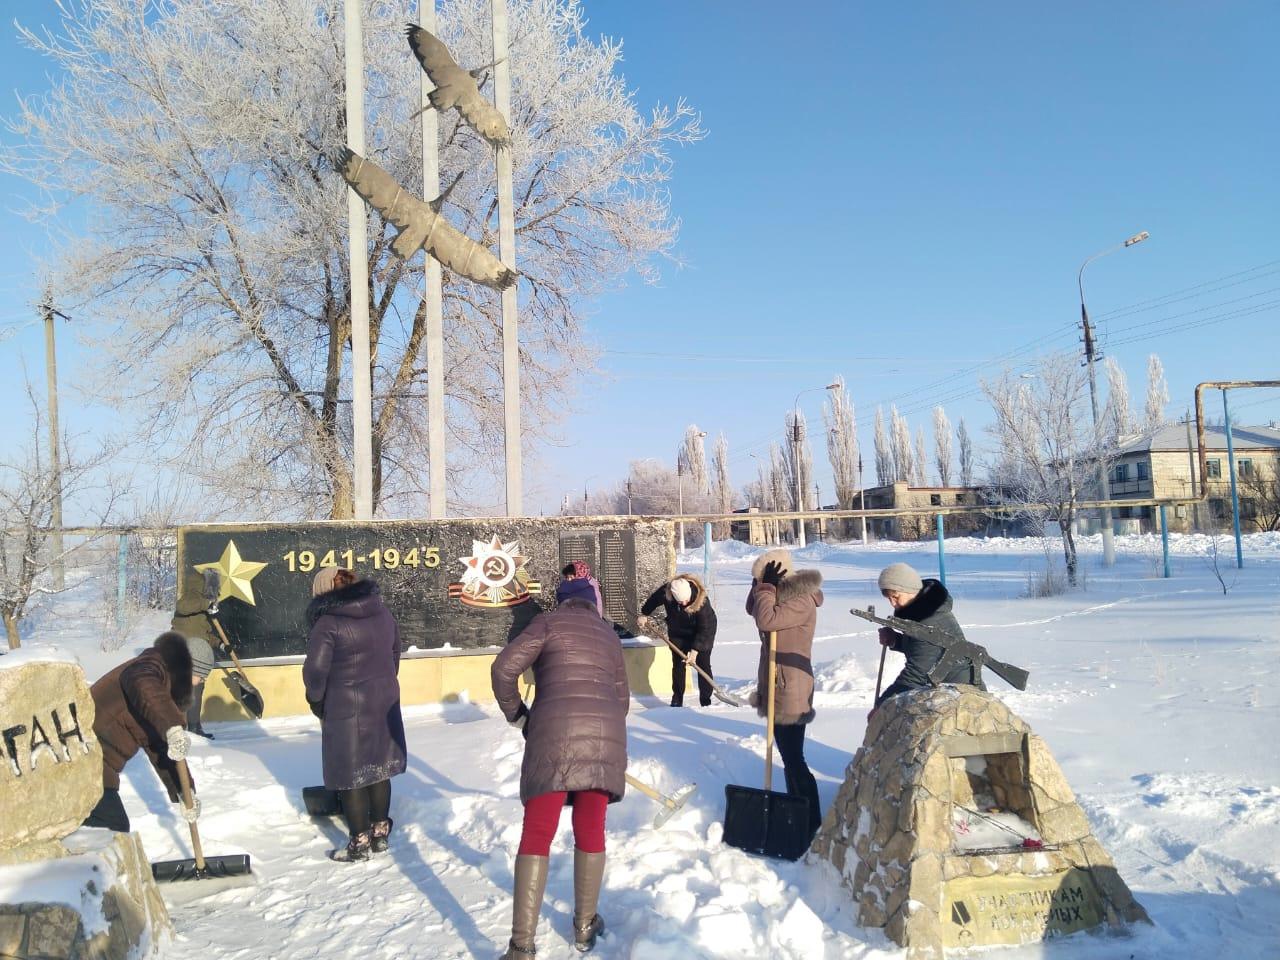 Сегодня 21 февраля сотрудники школы п.Колос почистили снег на территории памятника погибшим в годы Великой Отечественной войны и в локальных войнах.